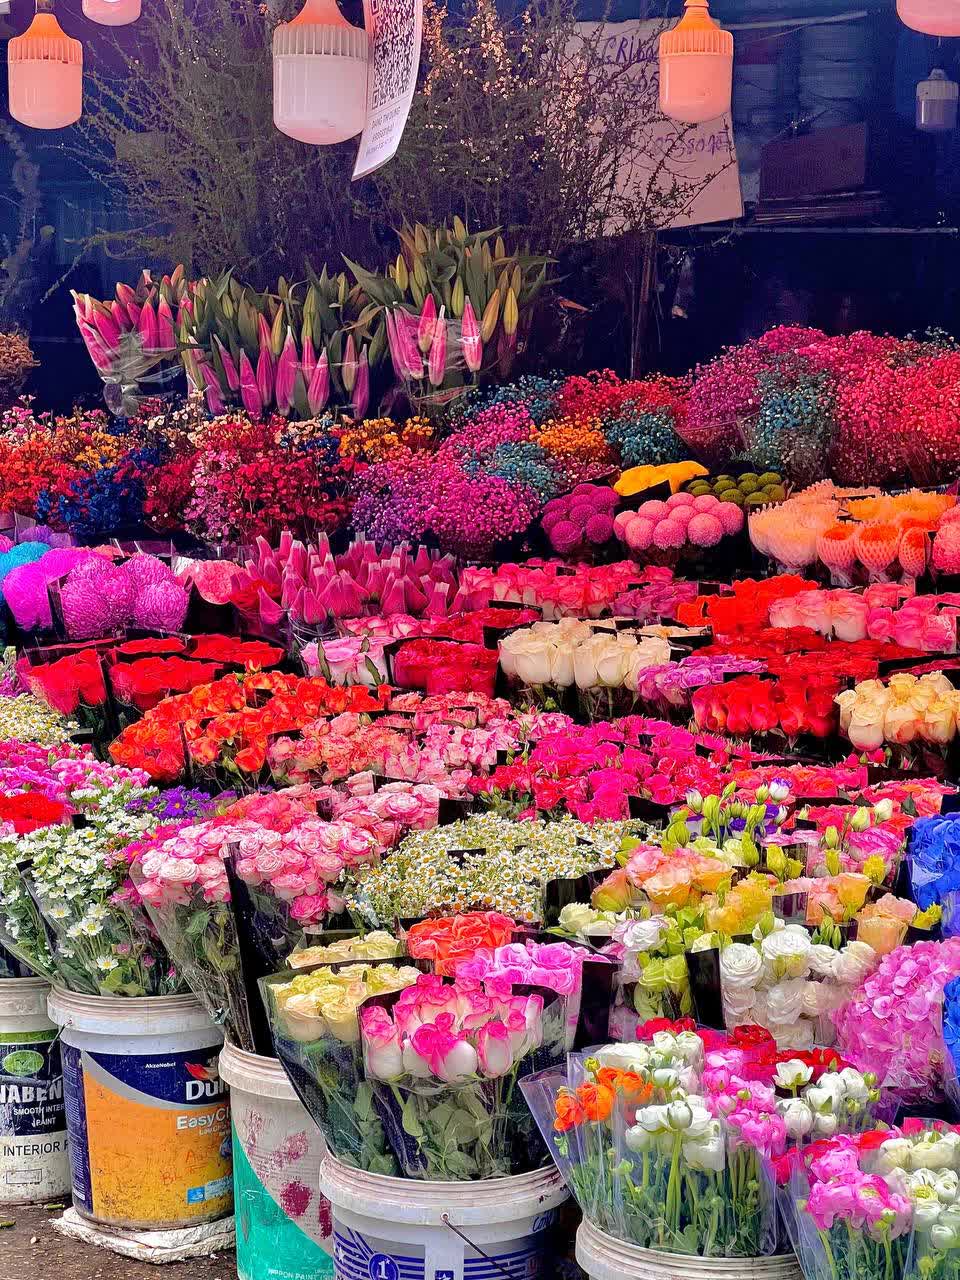 Mách bạn bí kíp mua hoa chợ Quảng Bá giá rẻ mà vẫn đẹp - Ảnh 2.